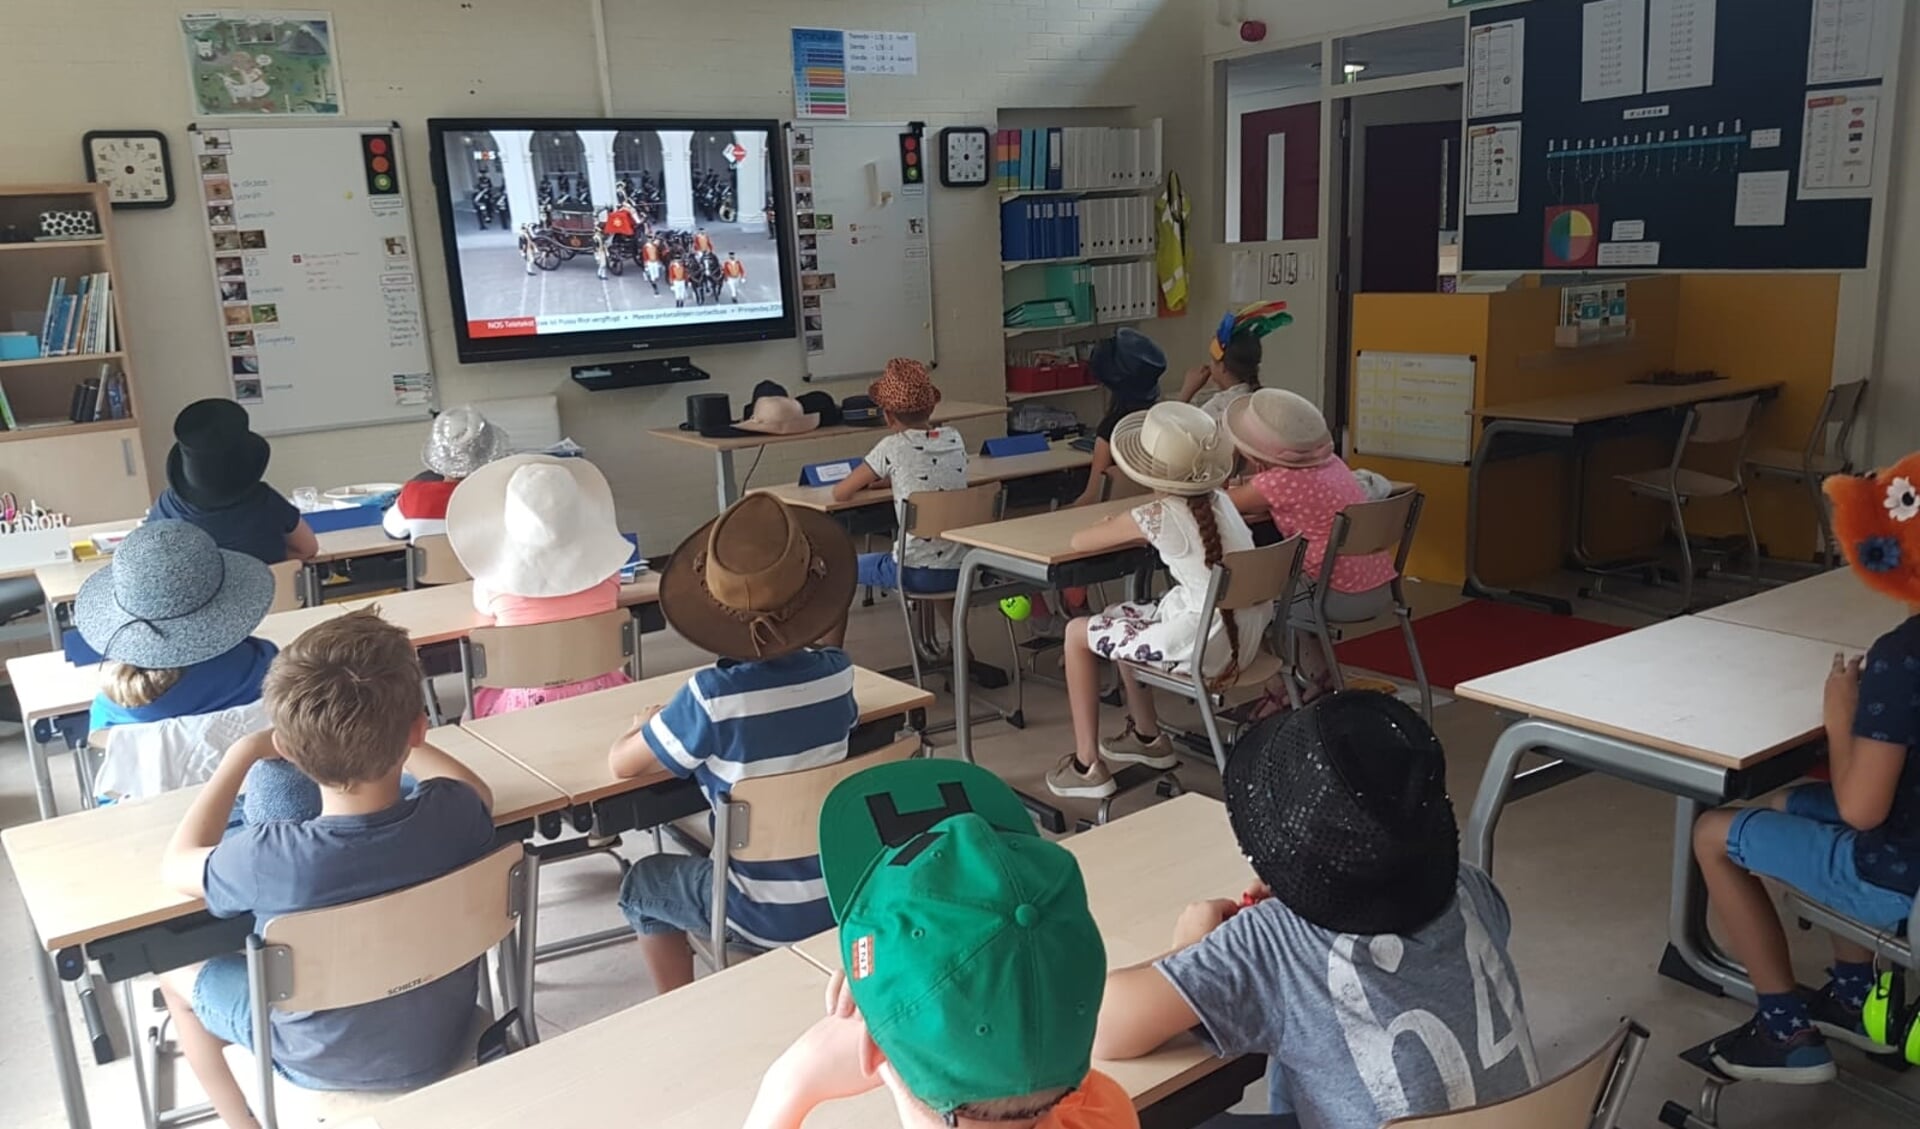 De leerlingen van groep 5/6 van de Leiderdorpse Gomarusschool keken vandaag in de klas naar de live uitzending van Prinsjesdag... mèt hoed op. 